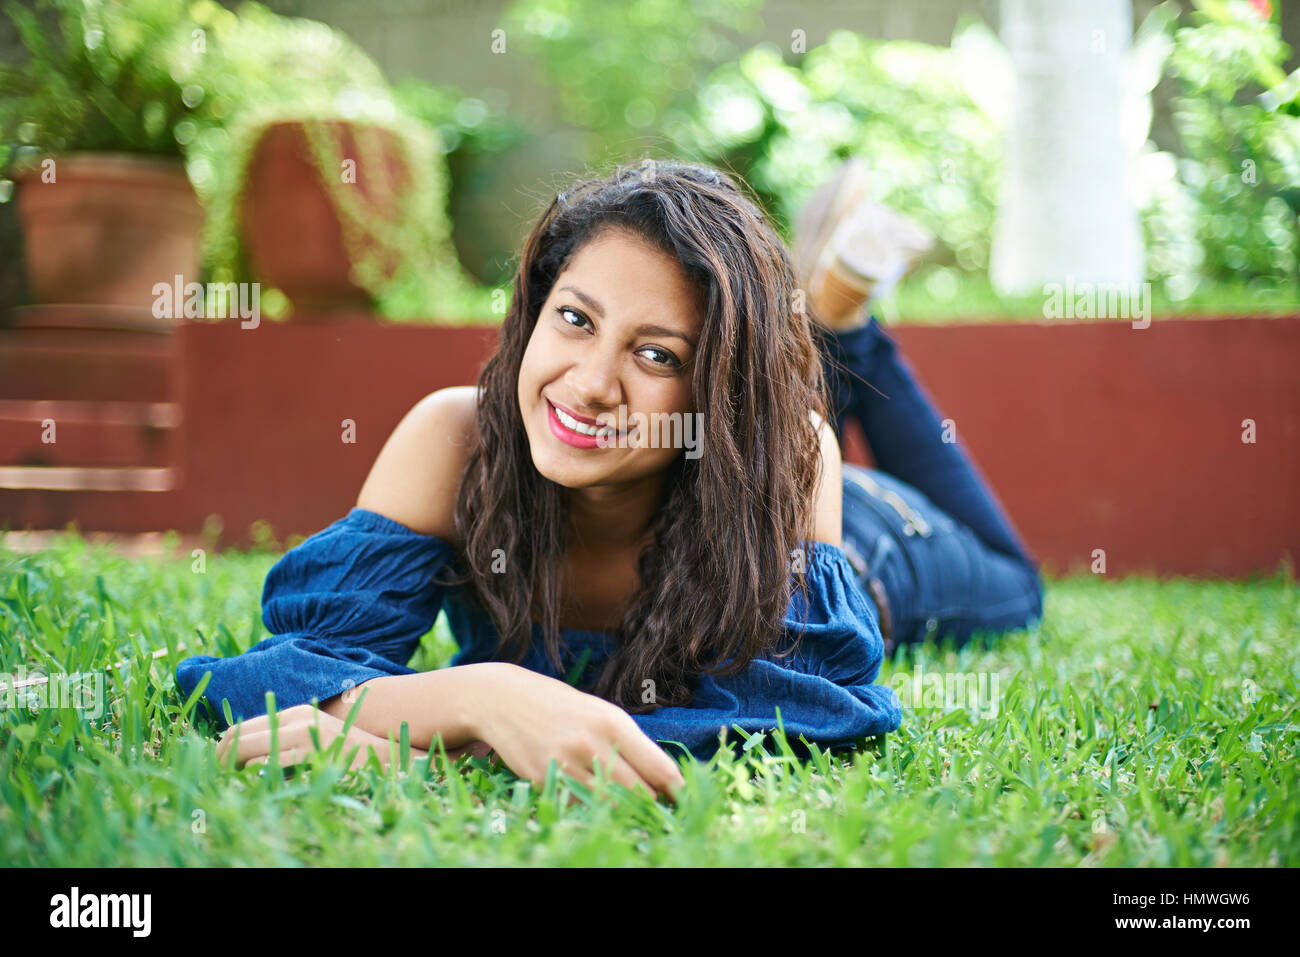 Adolescente latino chica recostada sobre la hierba verde de estacionamiento Foto de stock